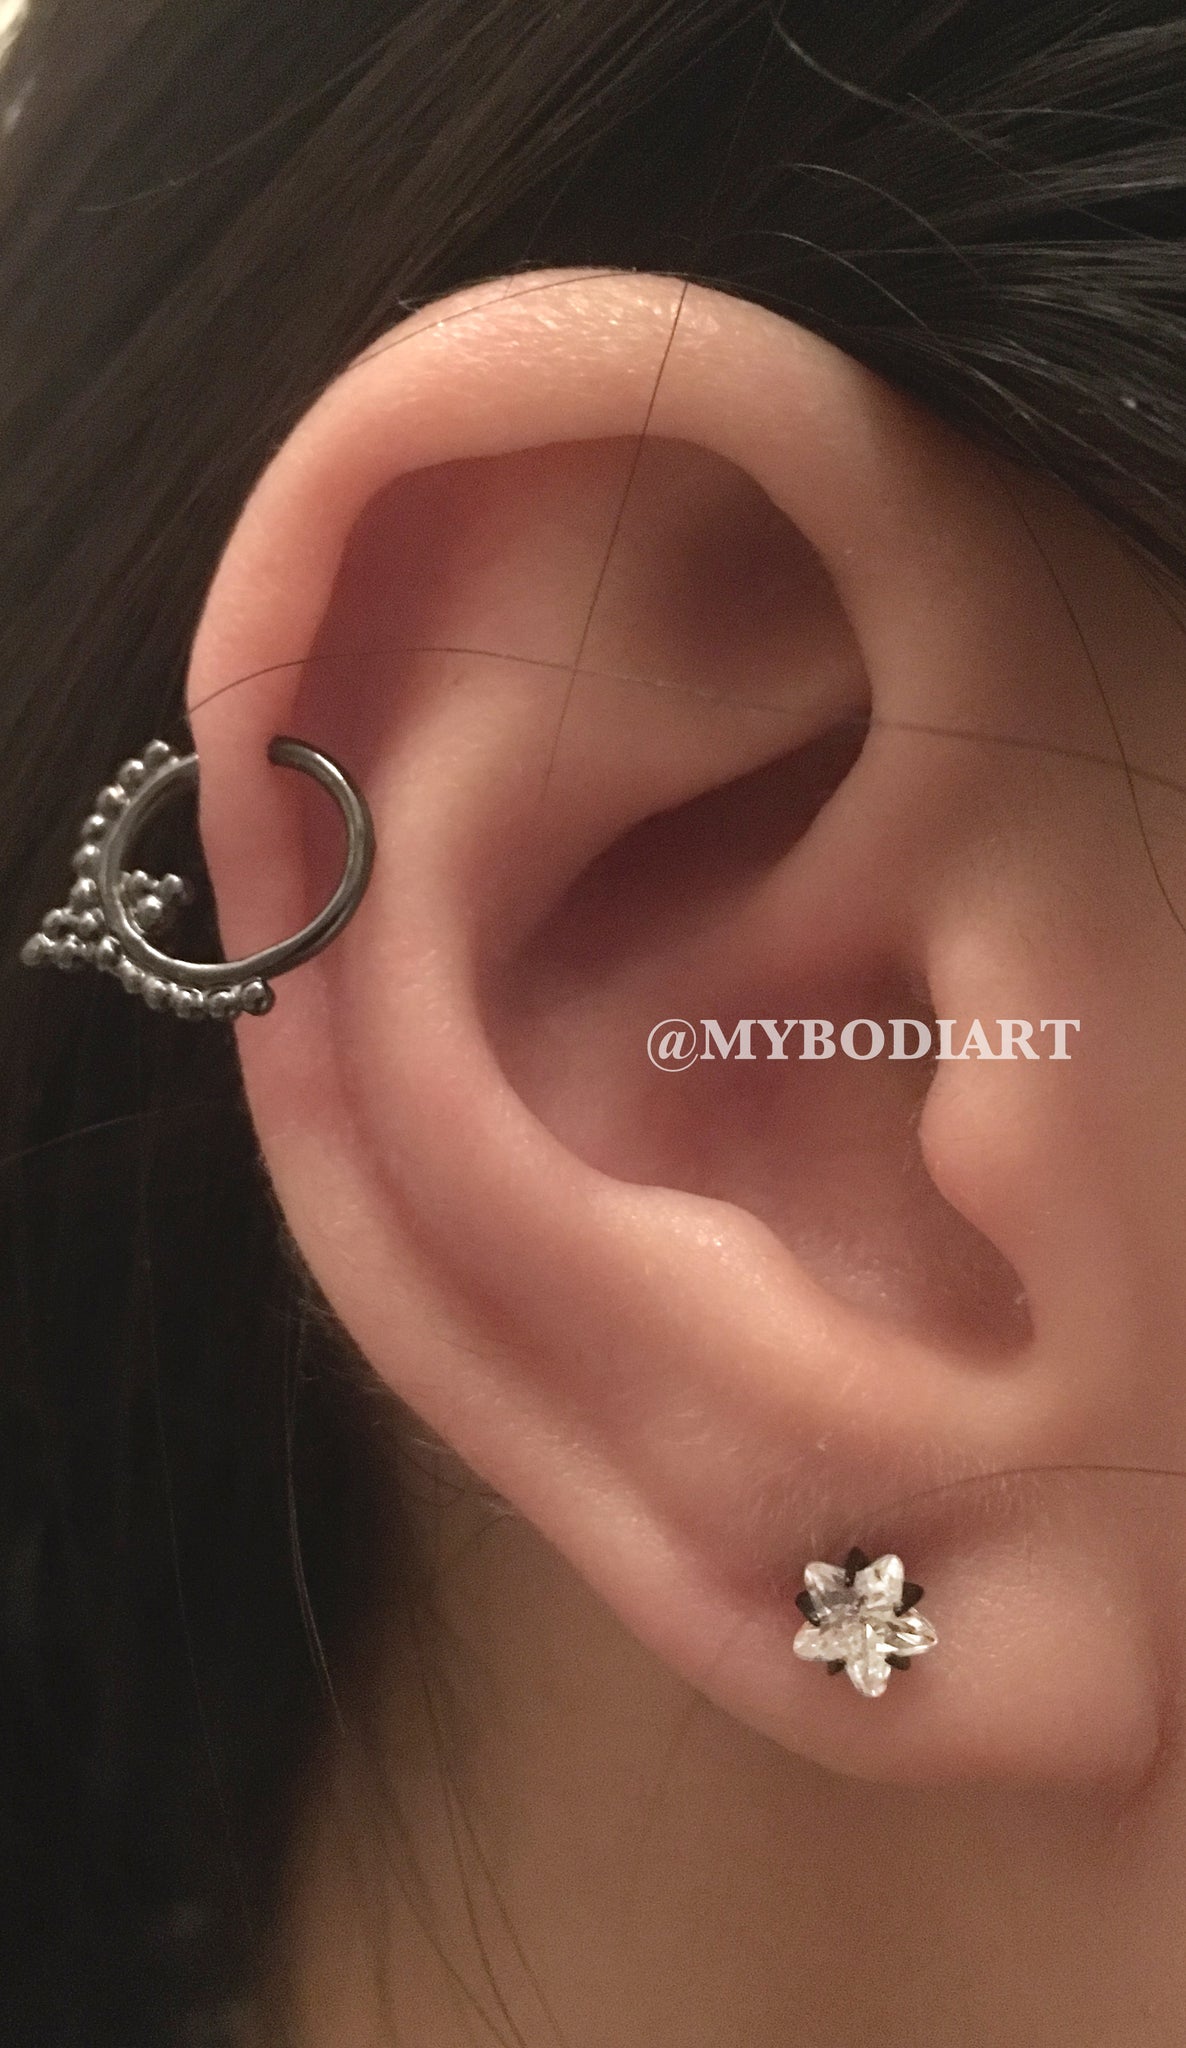 Simple Ear Piercing Ideas Cartilage Ring Hoop Star Earring Stud - www.MyBodiArt.com